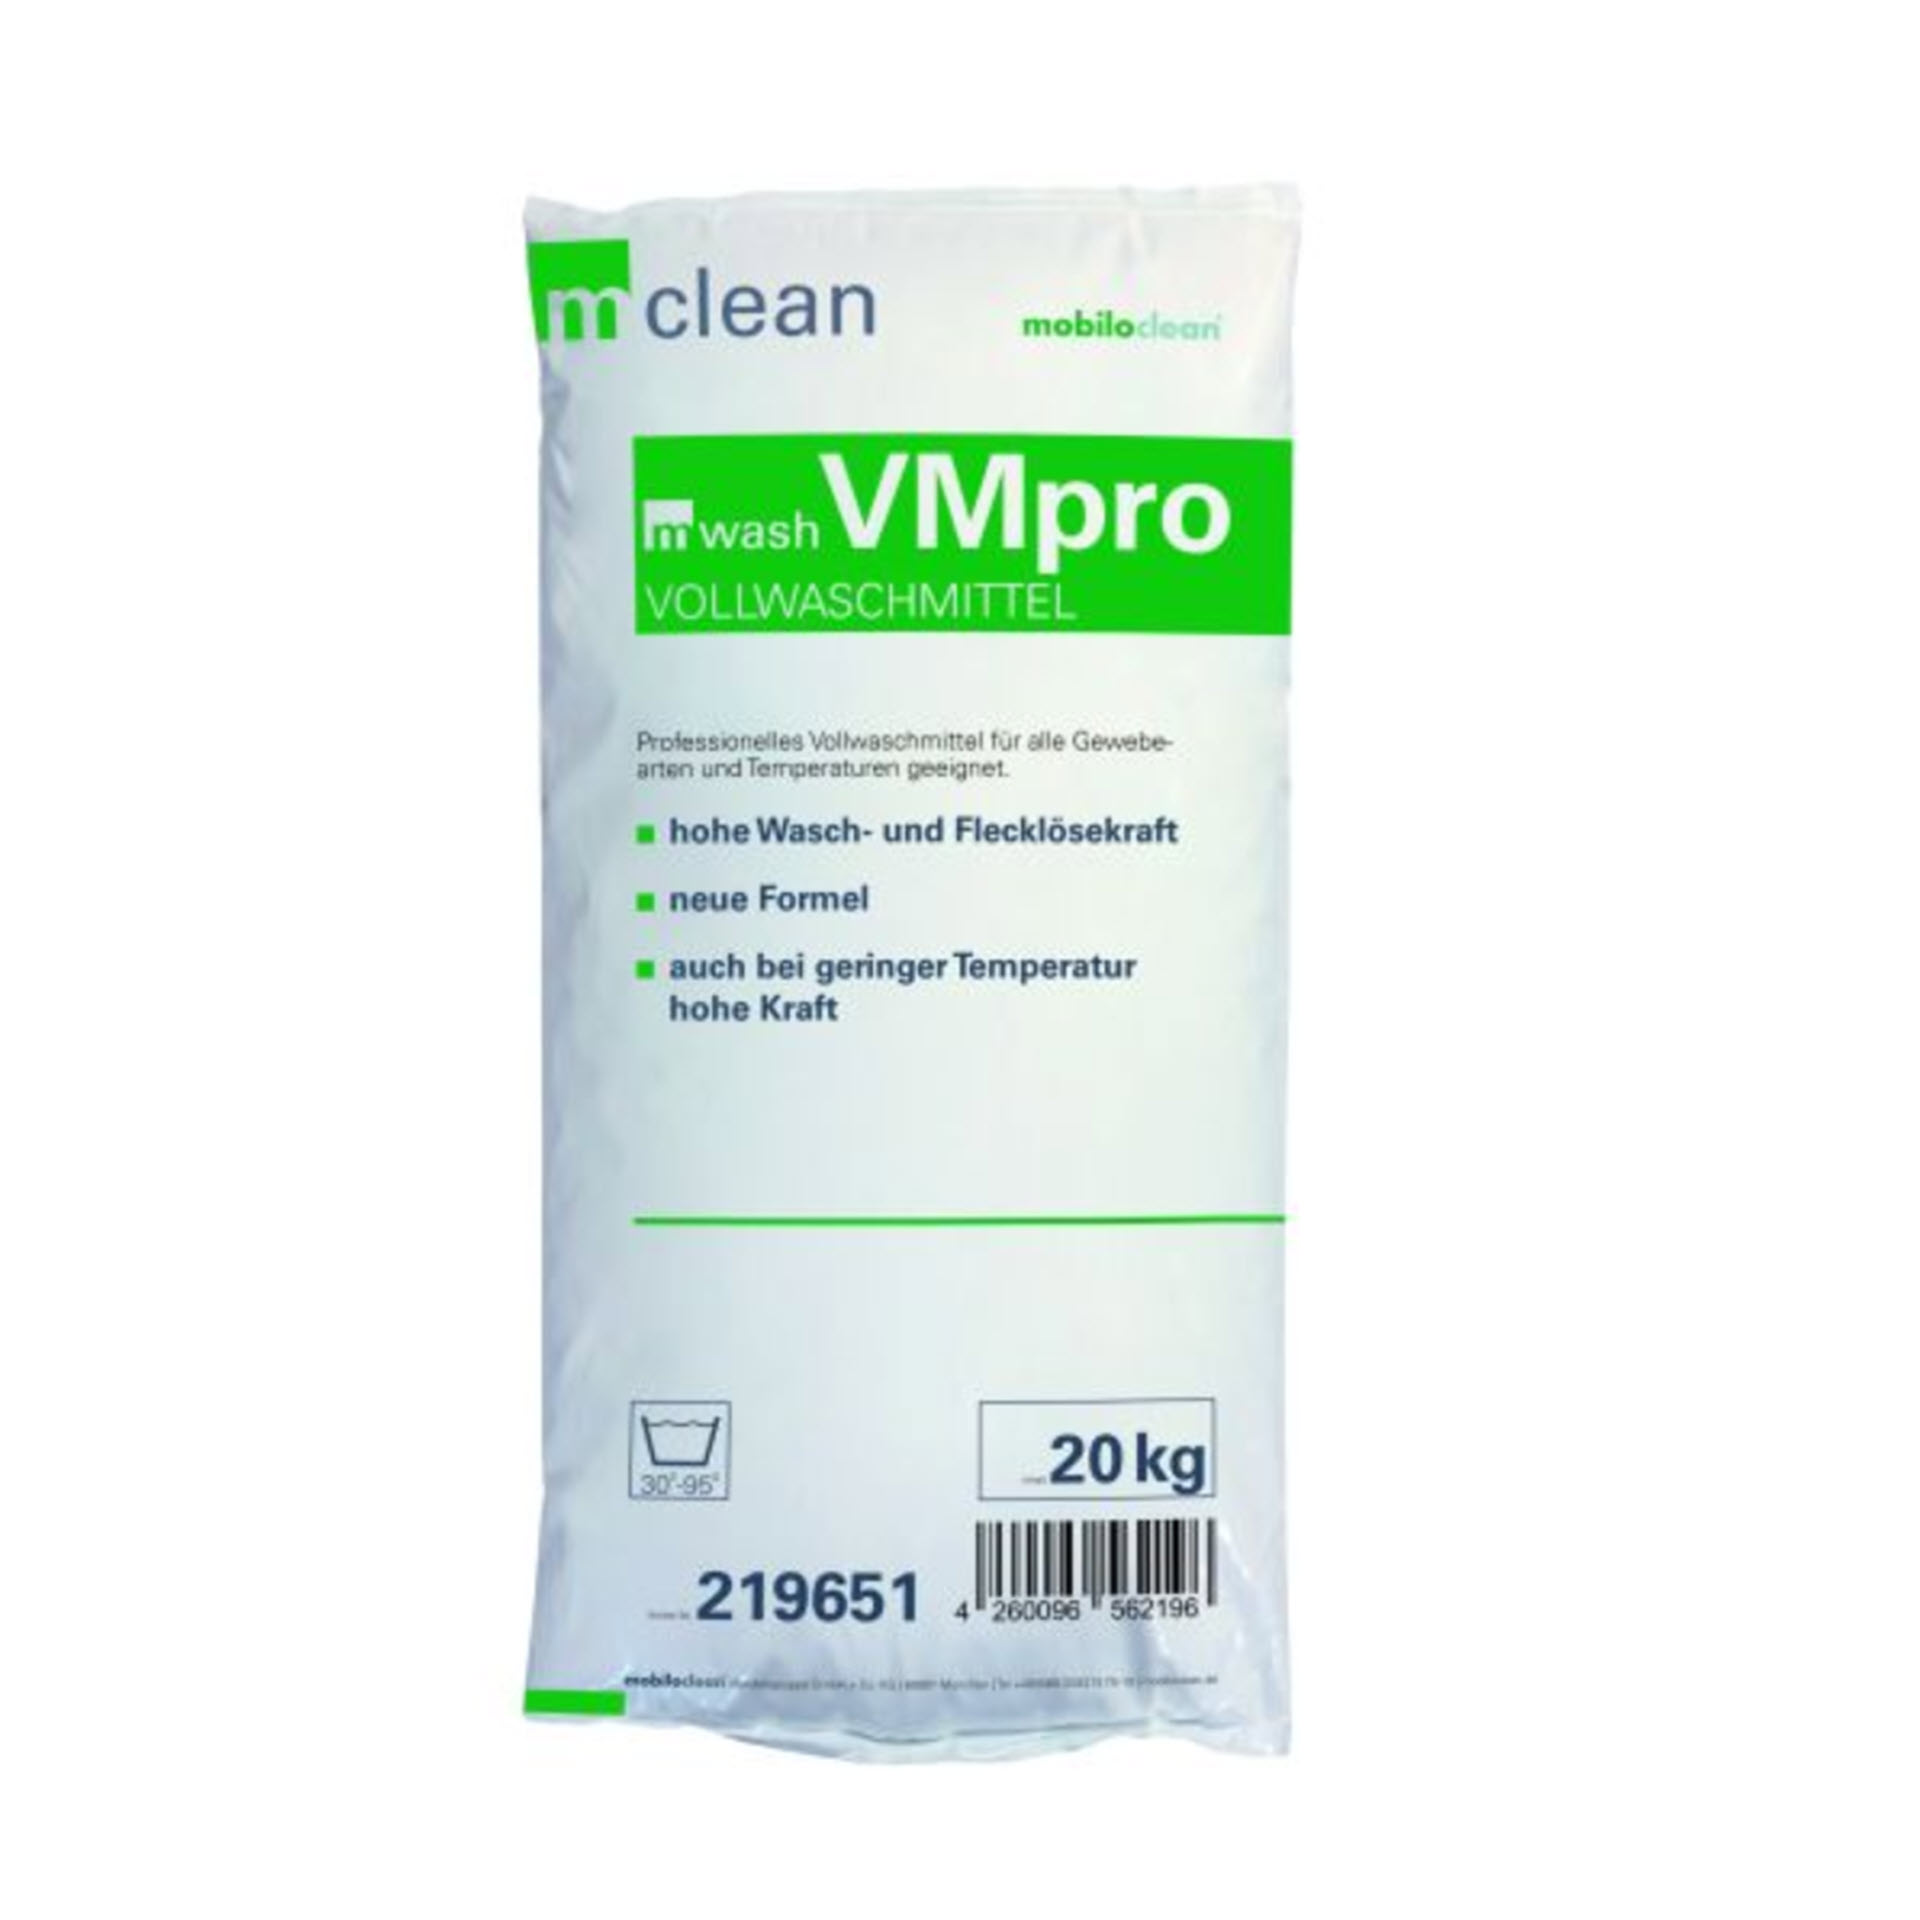 mwash VMpro Vollwaschmittel 20 Kg Sack - phosphatfrei